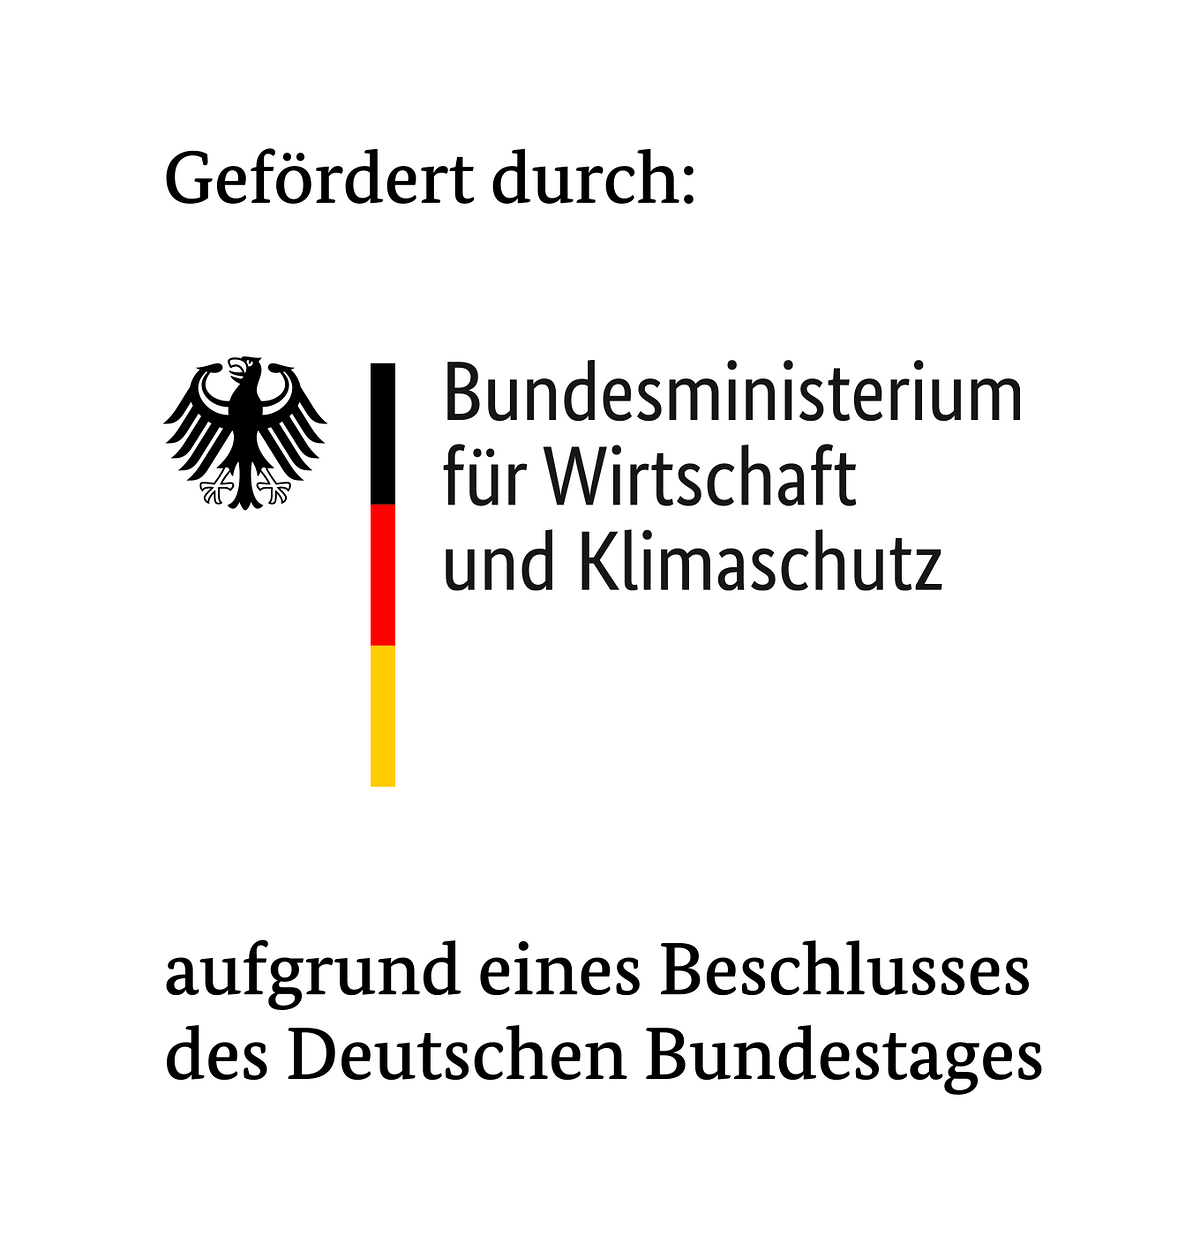 Logo Bundesministerium für Wirtschaft und Klimaschutz mit dem Zusatz gefördert durch und dem Untersatz: auffgrund eines Beschlusses des Deutschen Bundestages